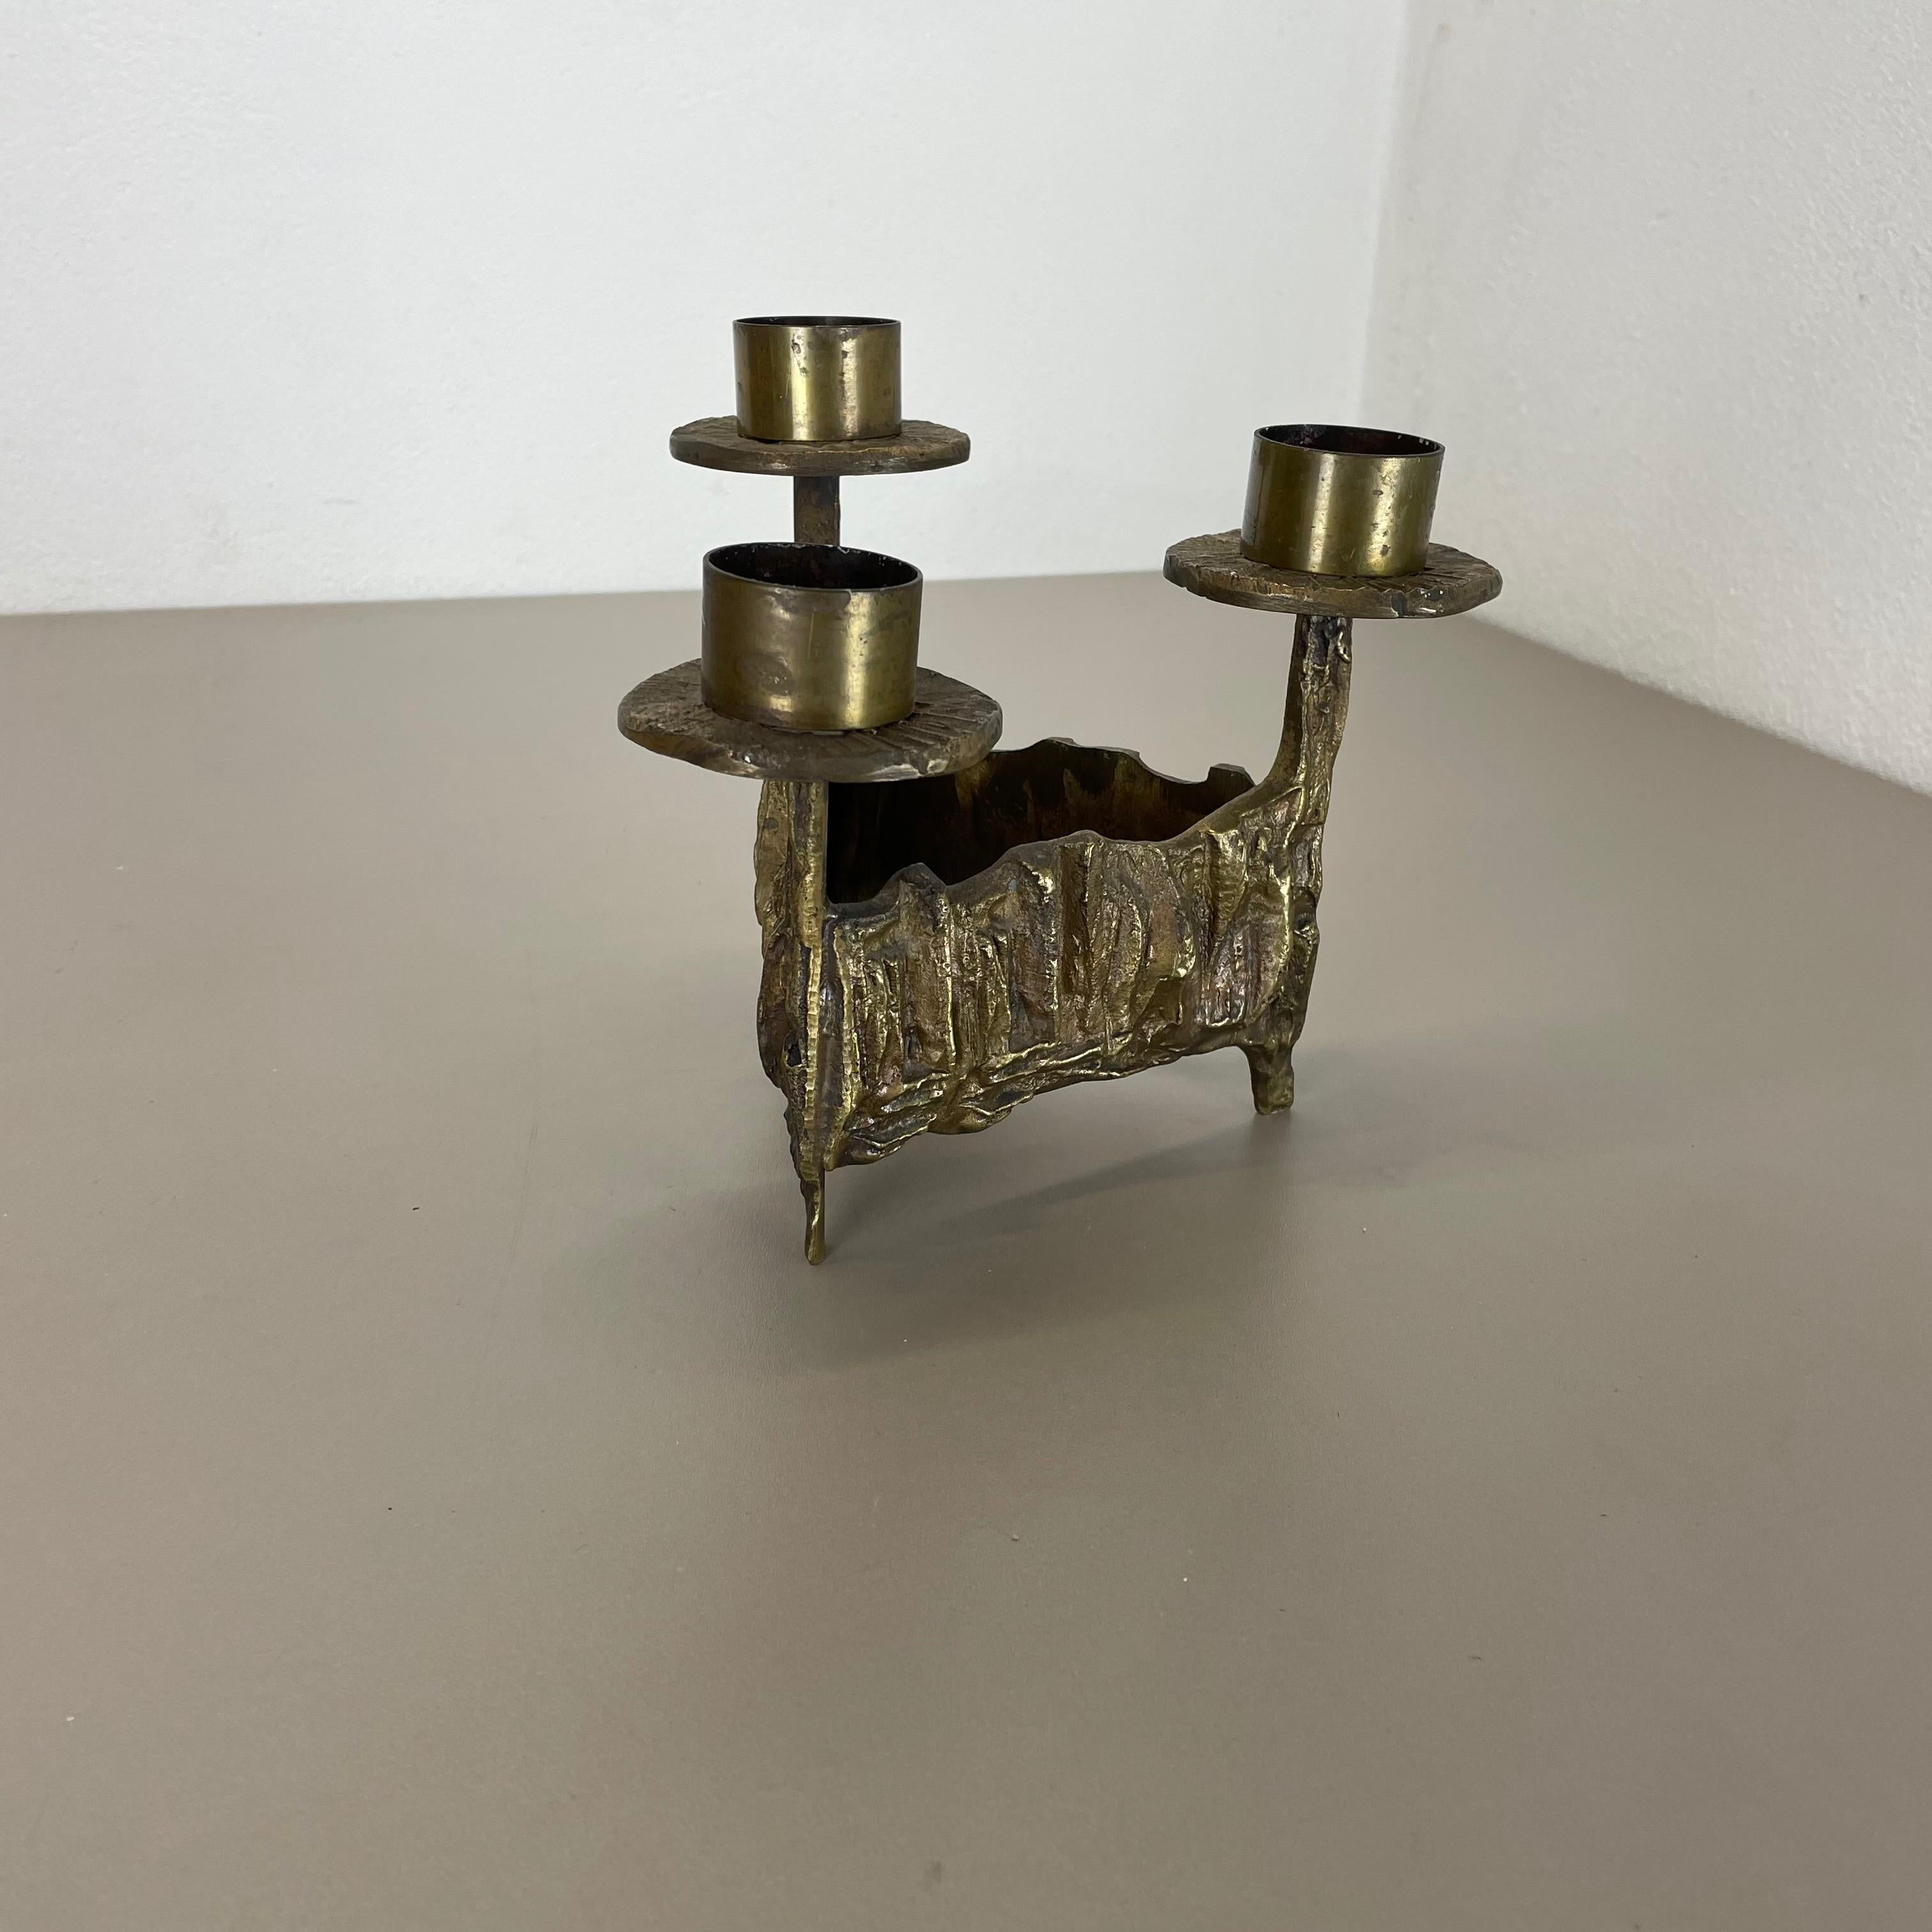 German Modernist Vintage Sculptural Brutalist Brass Metal Candleholder, France, 1970s For Sale